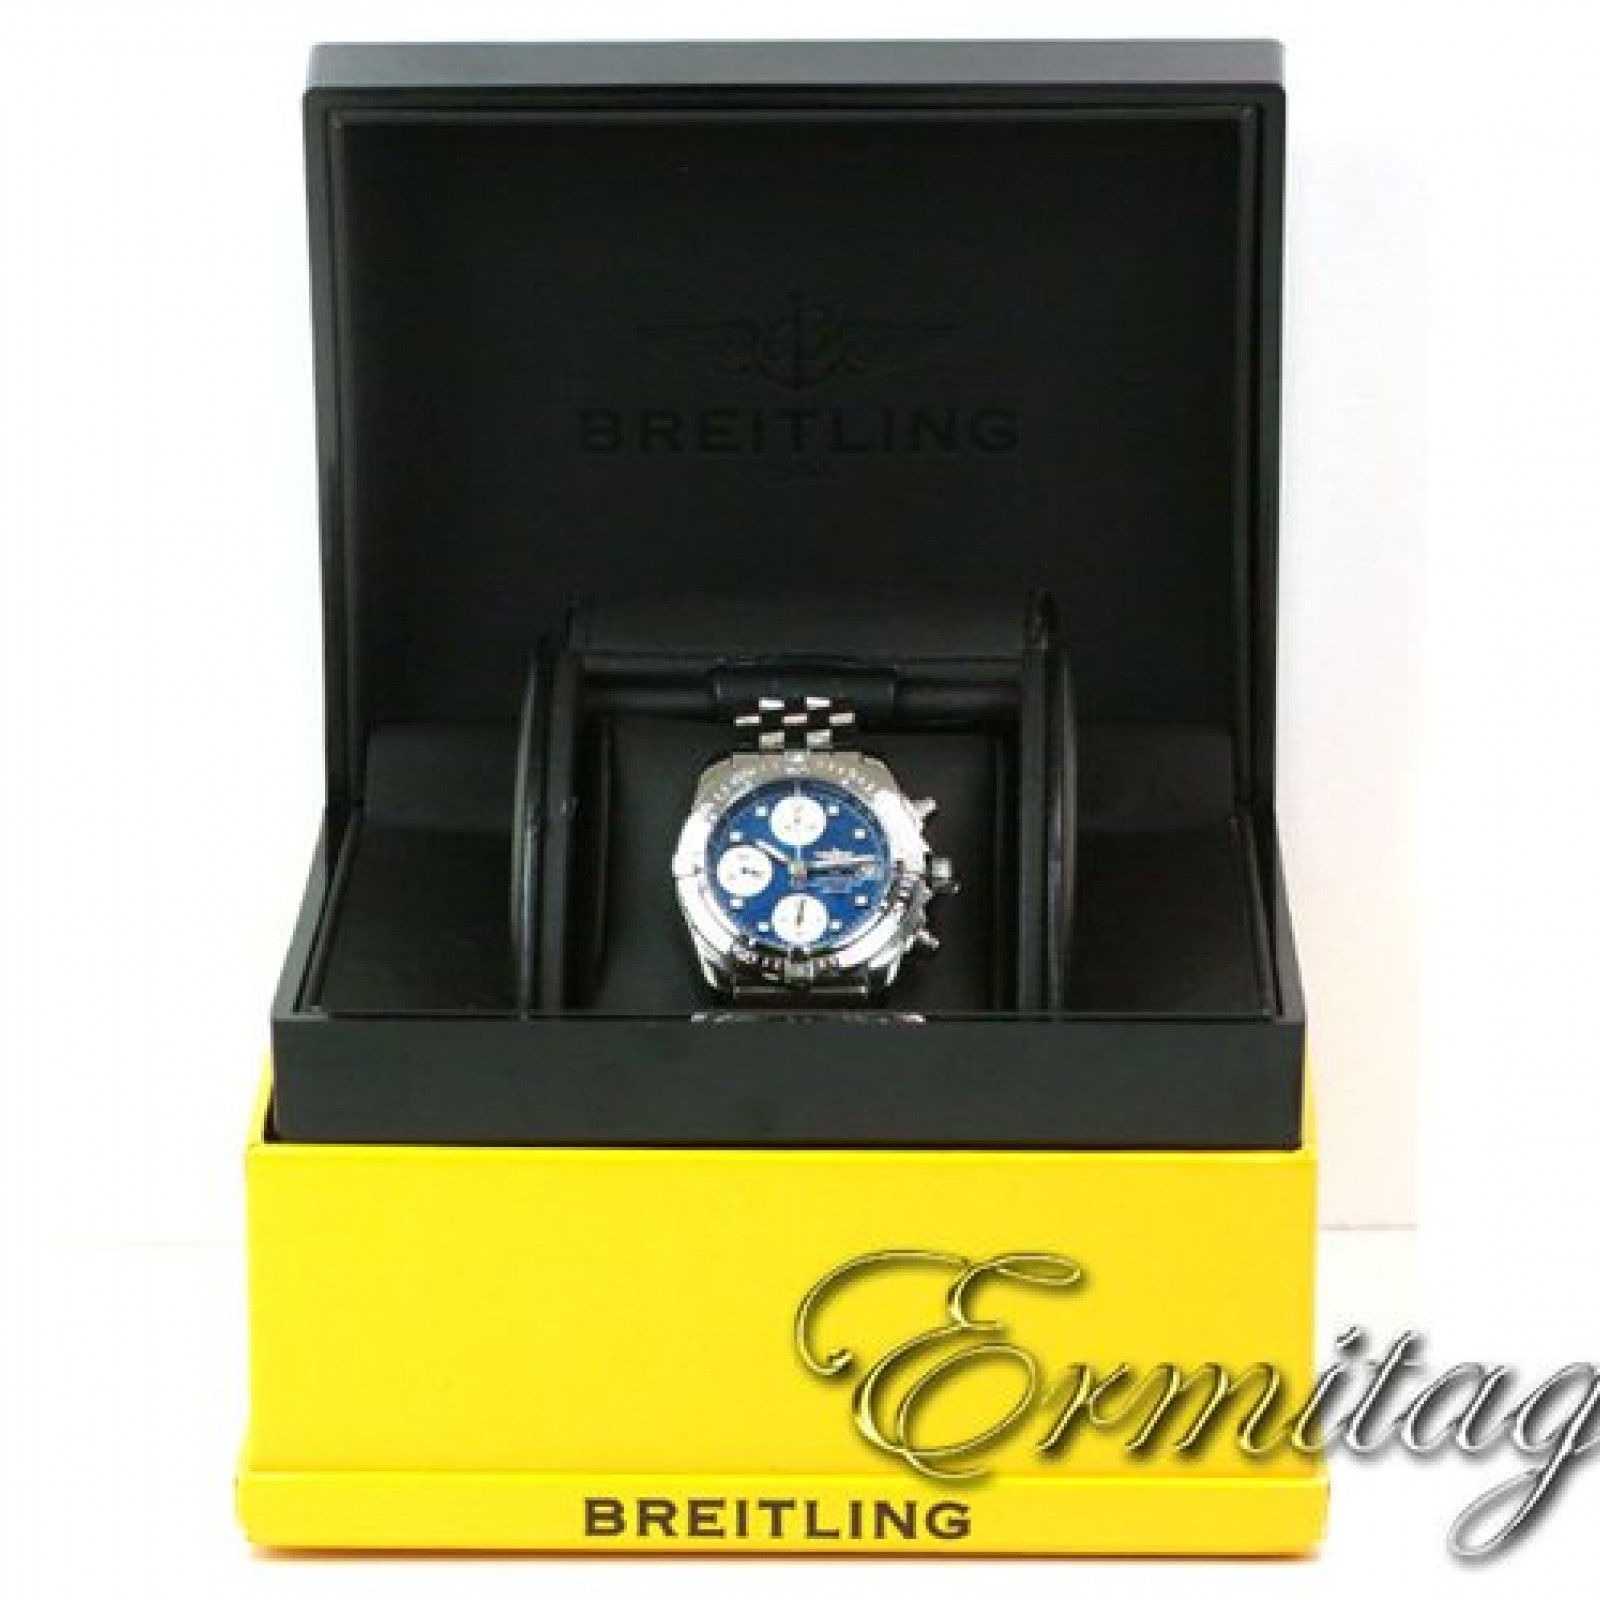 Breitling Chronomat Vitesse B13050.1 Steel Year 2007